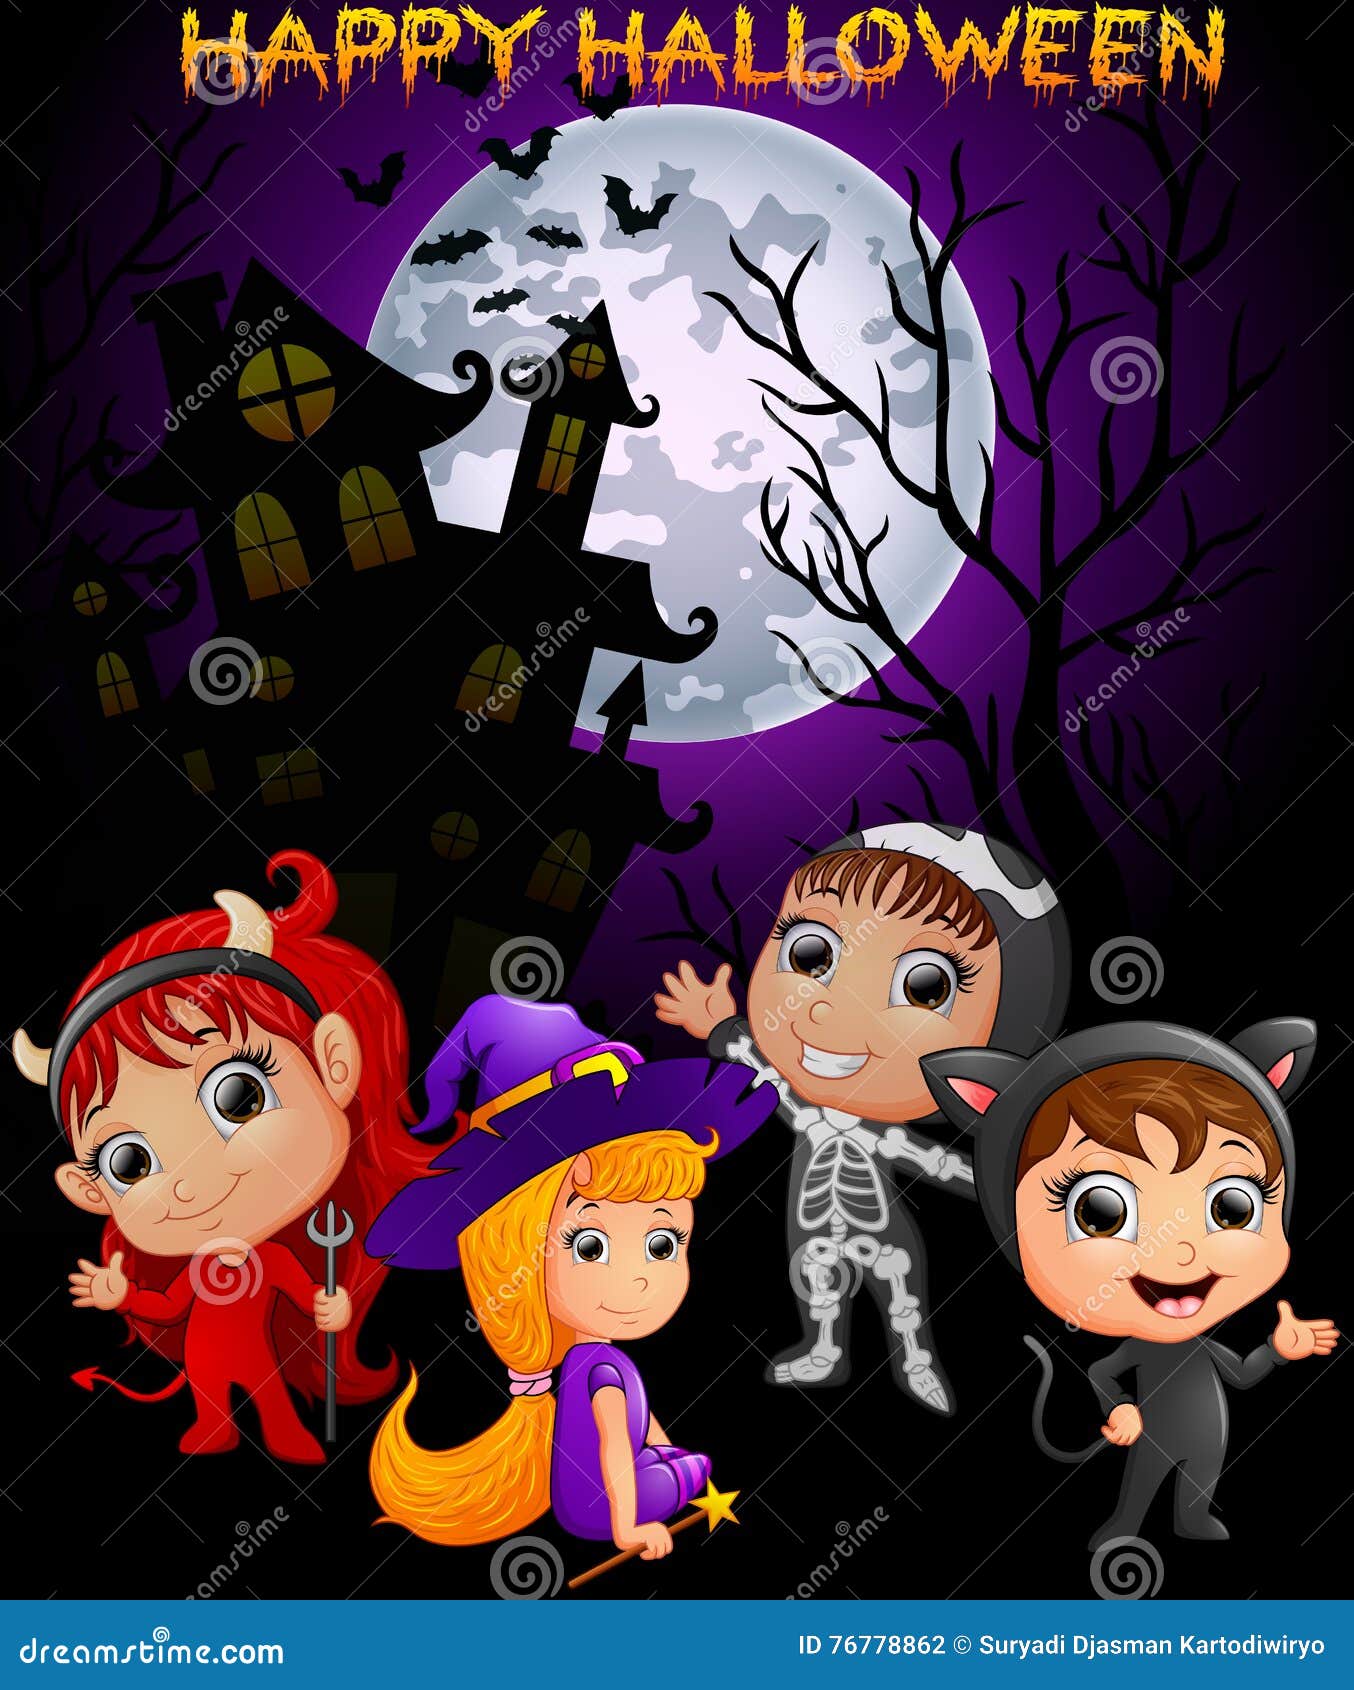 Happy Halloween Purple Background with Children in Halloween Costume ...